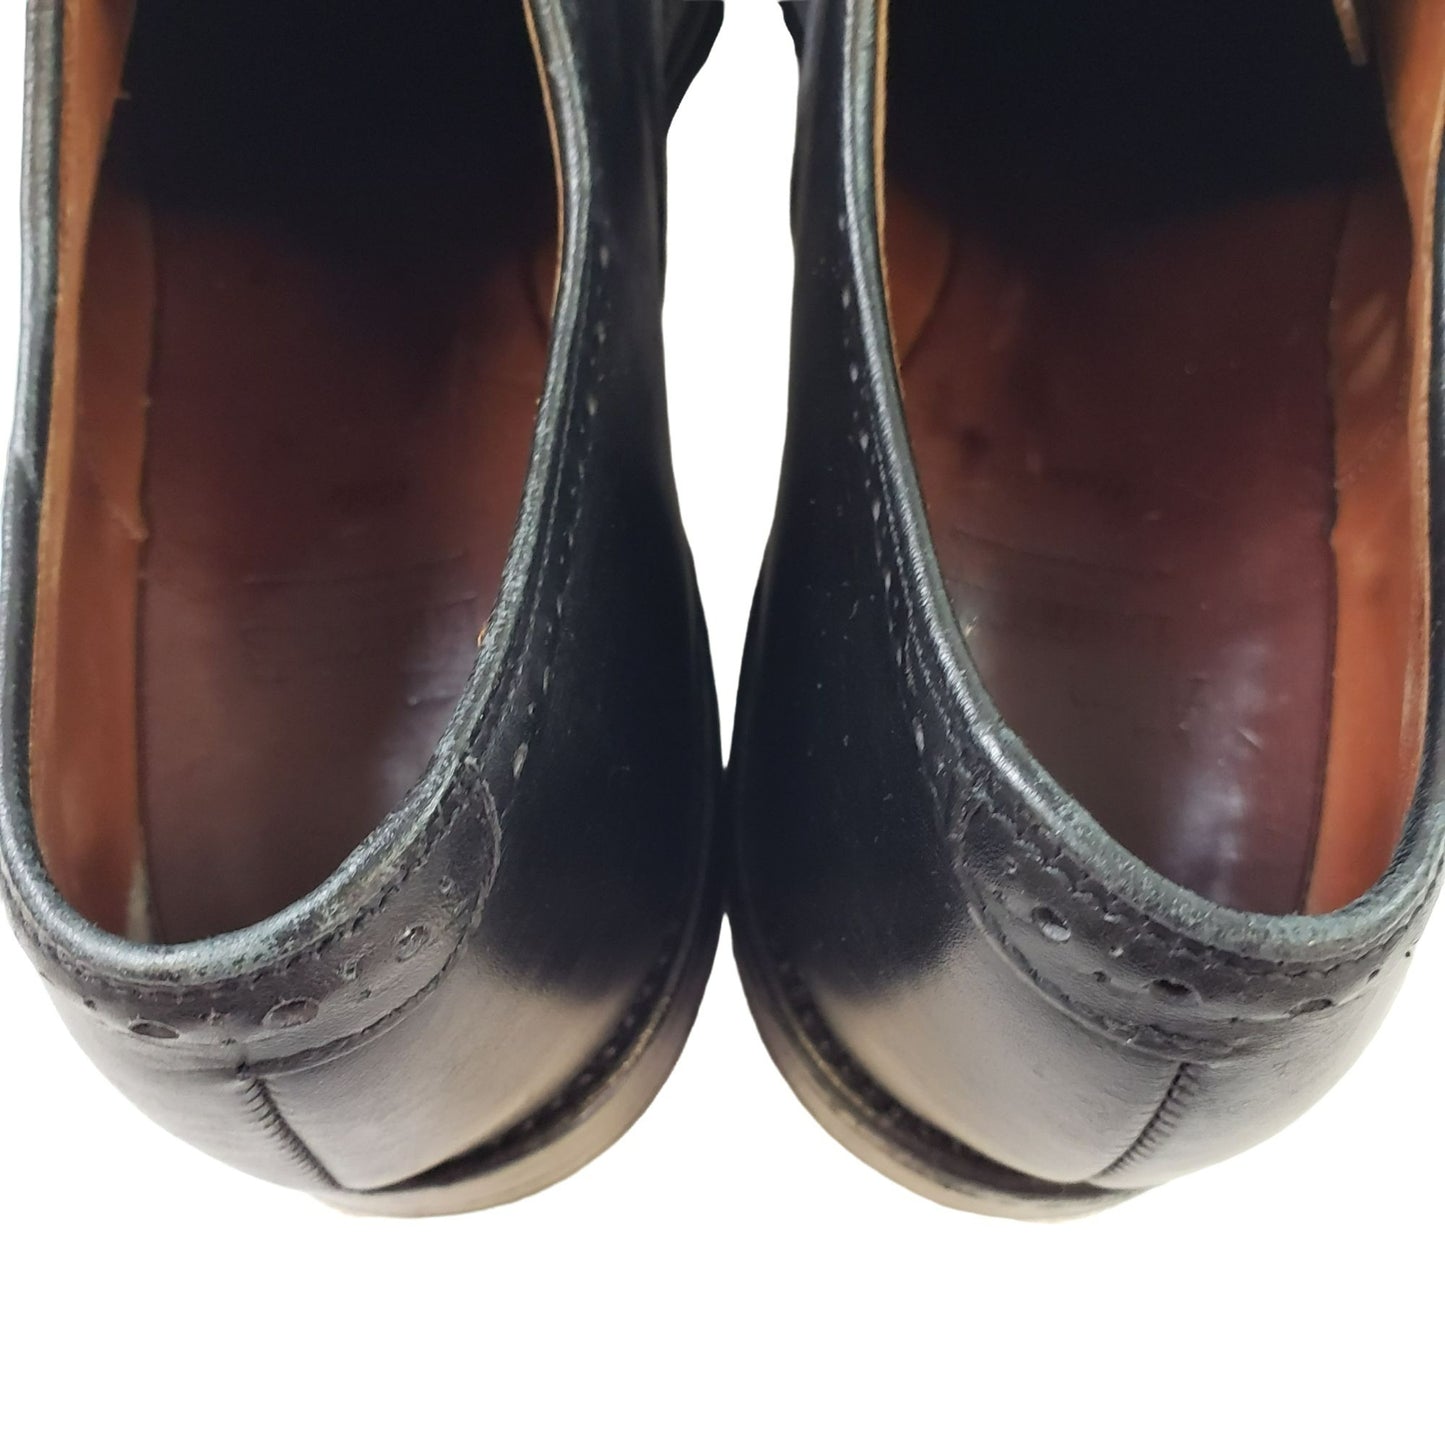 Allen Edmonds Fifth Avenue Cap Toe Oxford Dress Shoes Size 10.5